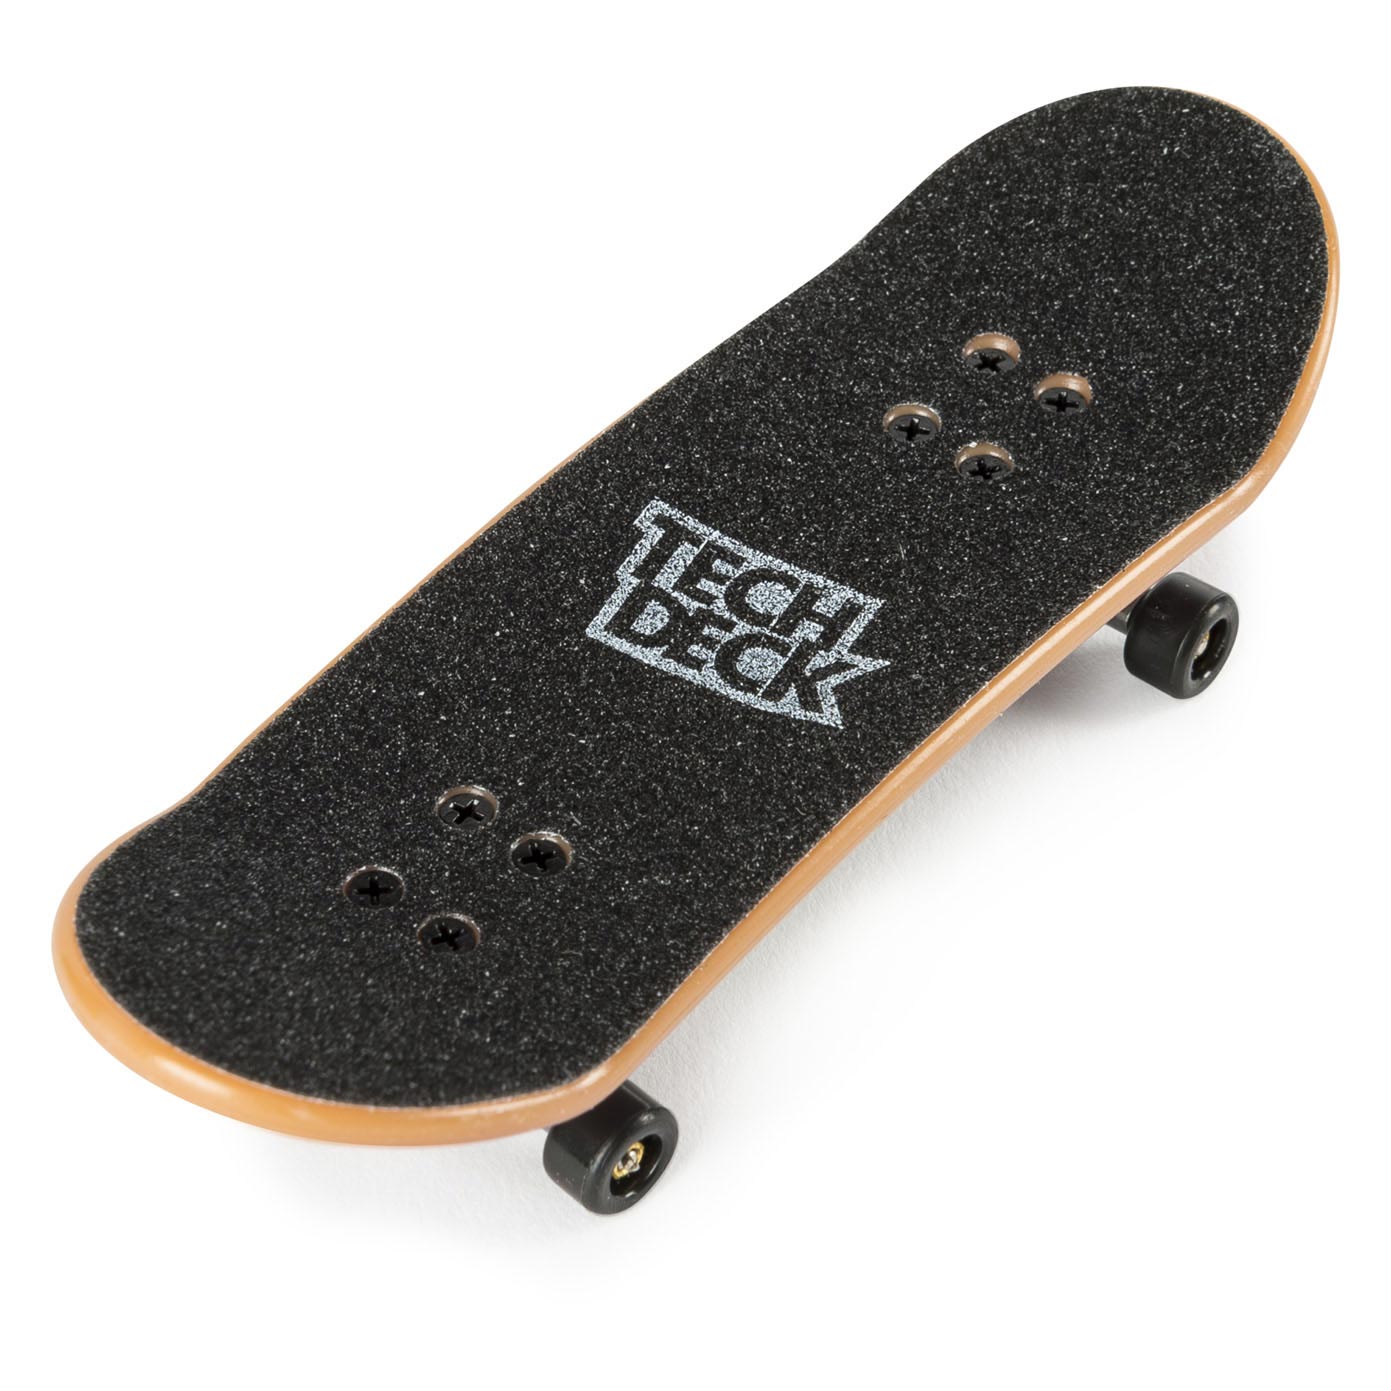 Tech Deck - Planche à roulettes Finger